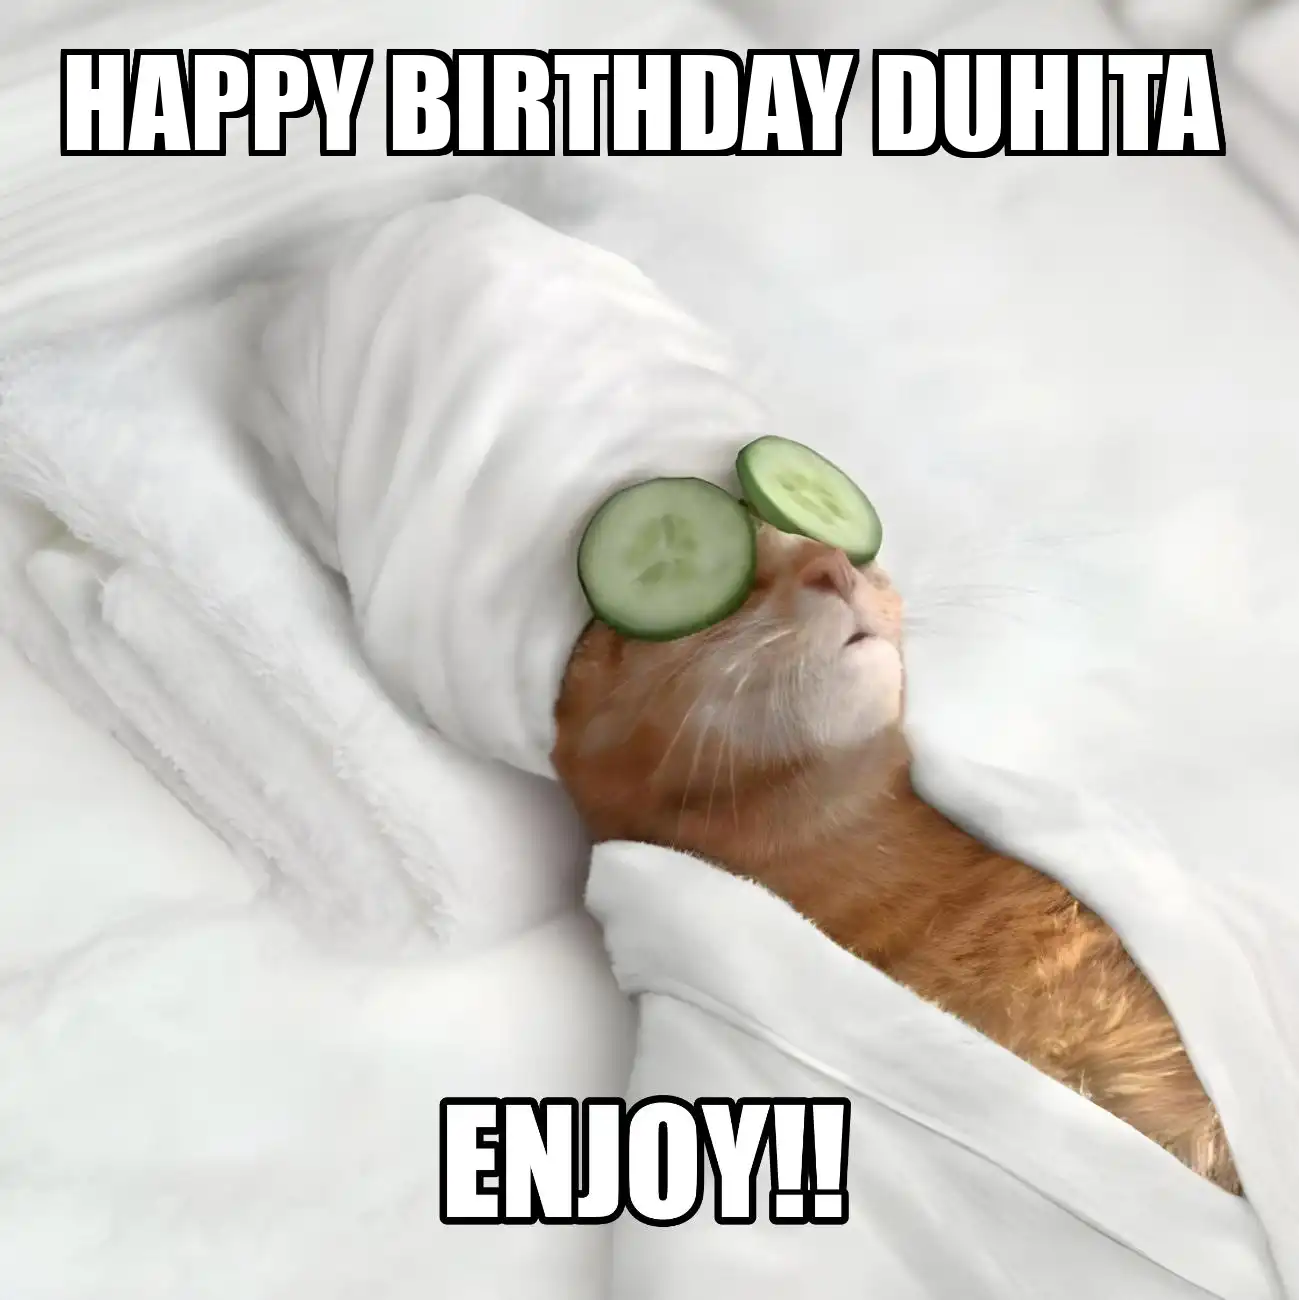 Happy Birthday Duhita Enjoy Cat Meme